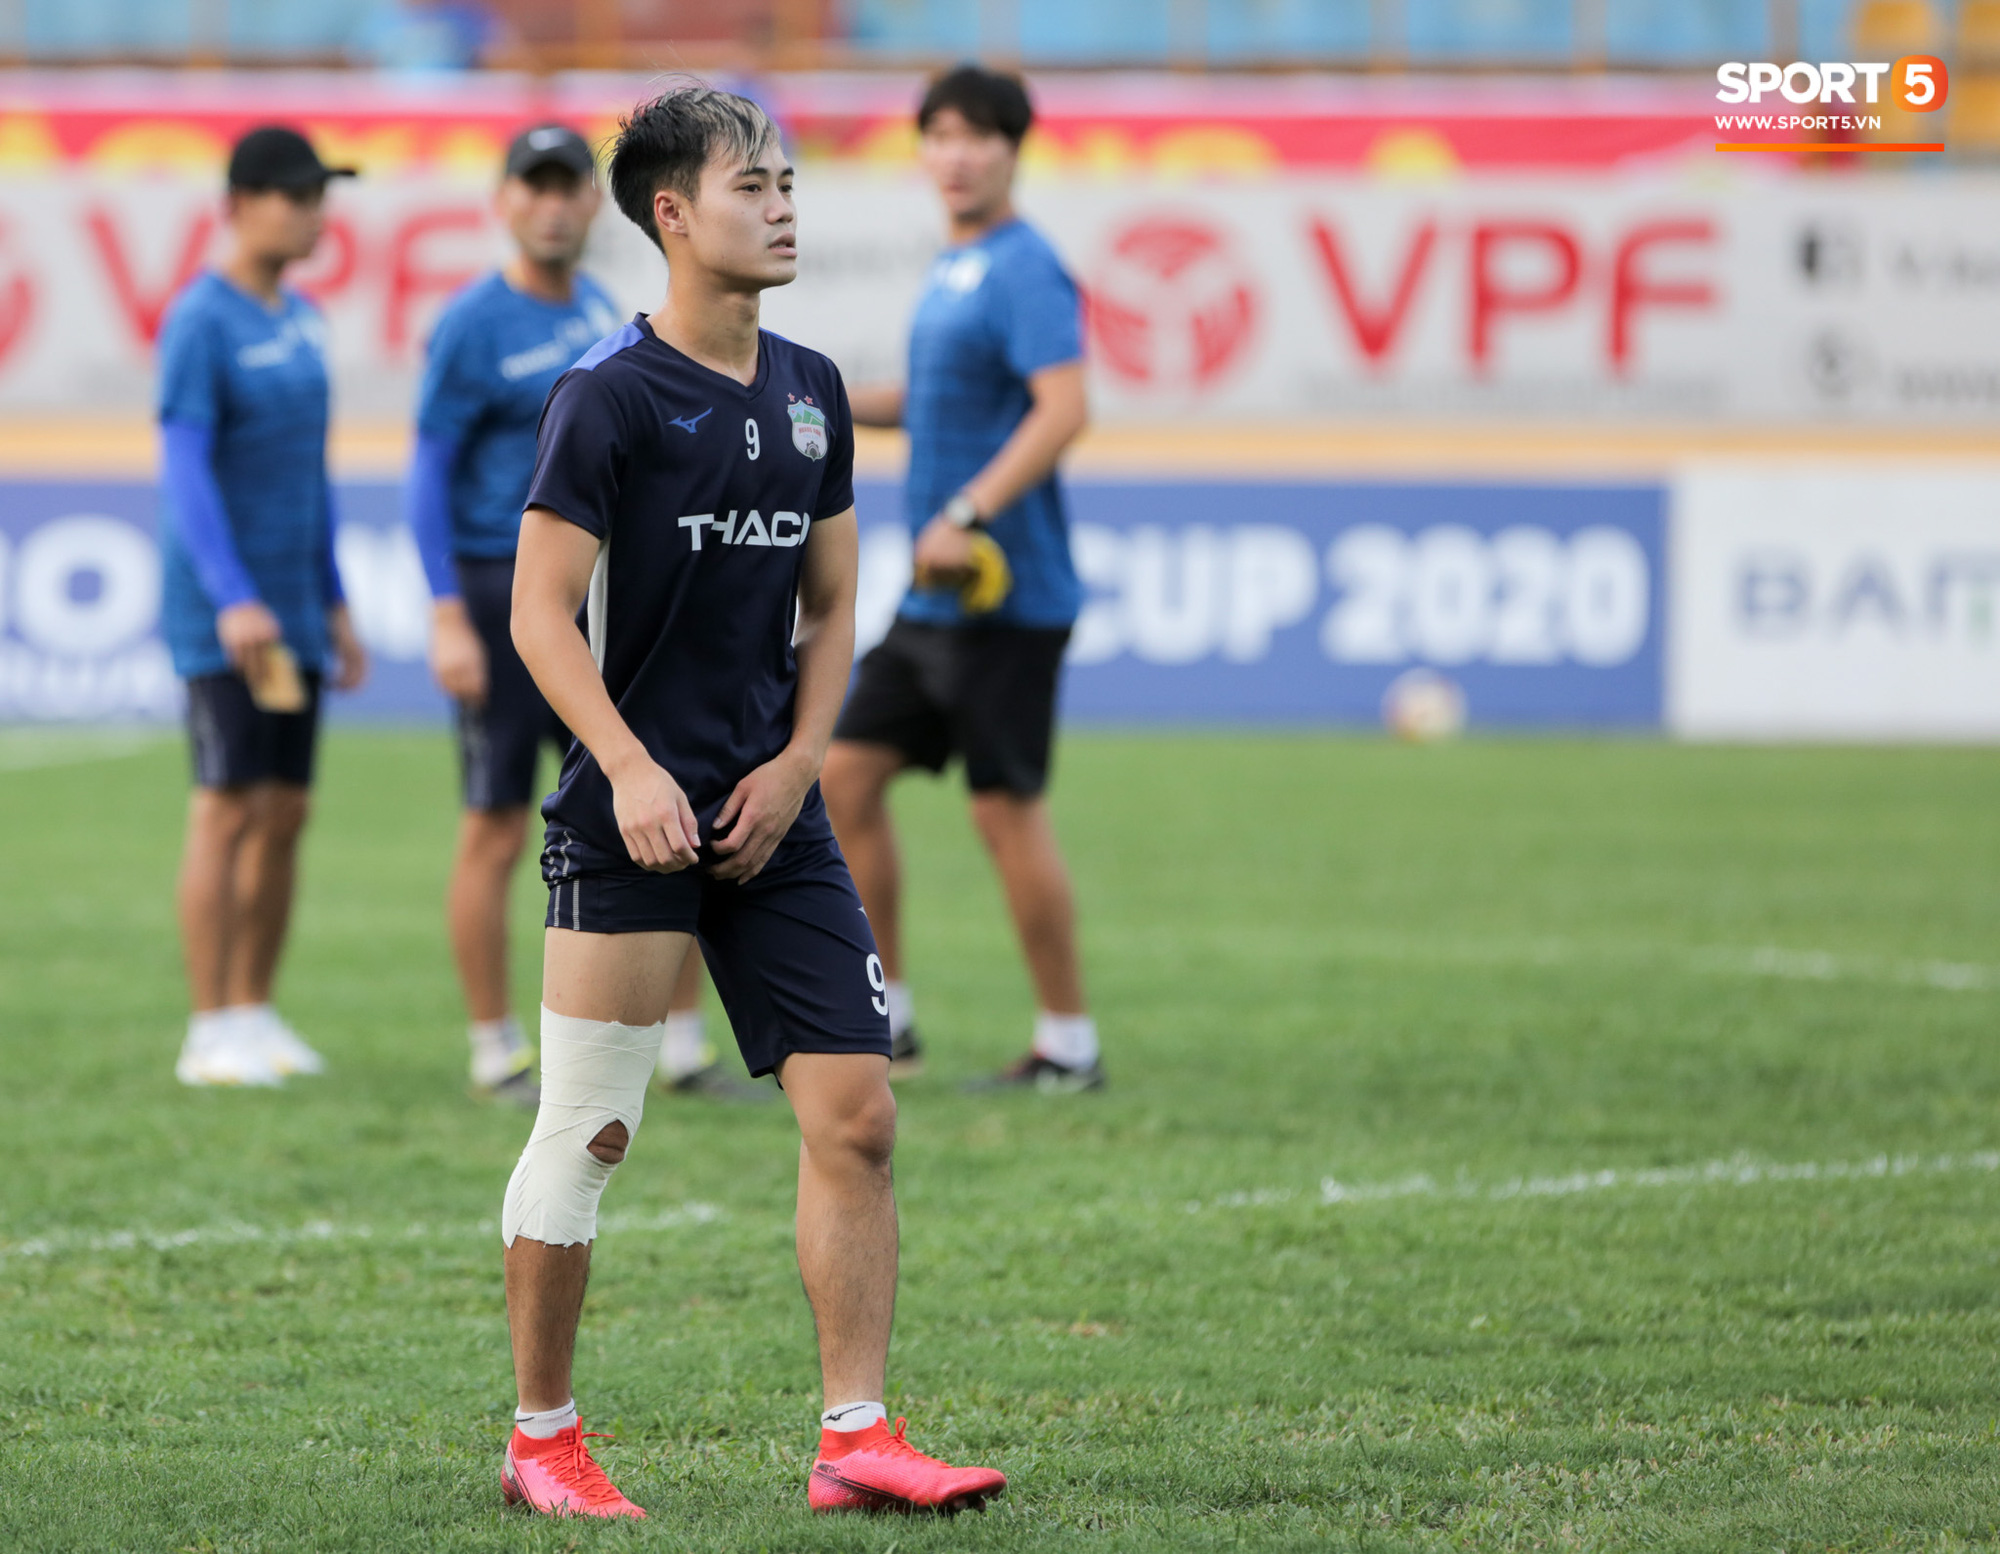 Chân đau vẫn cố thi đấu, Văn Toàn nguy cơ lỡ đại chiến với Hà Nội FC - Ảnh 1.